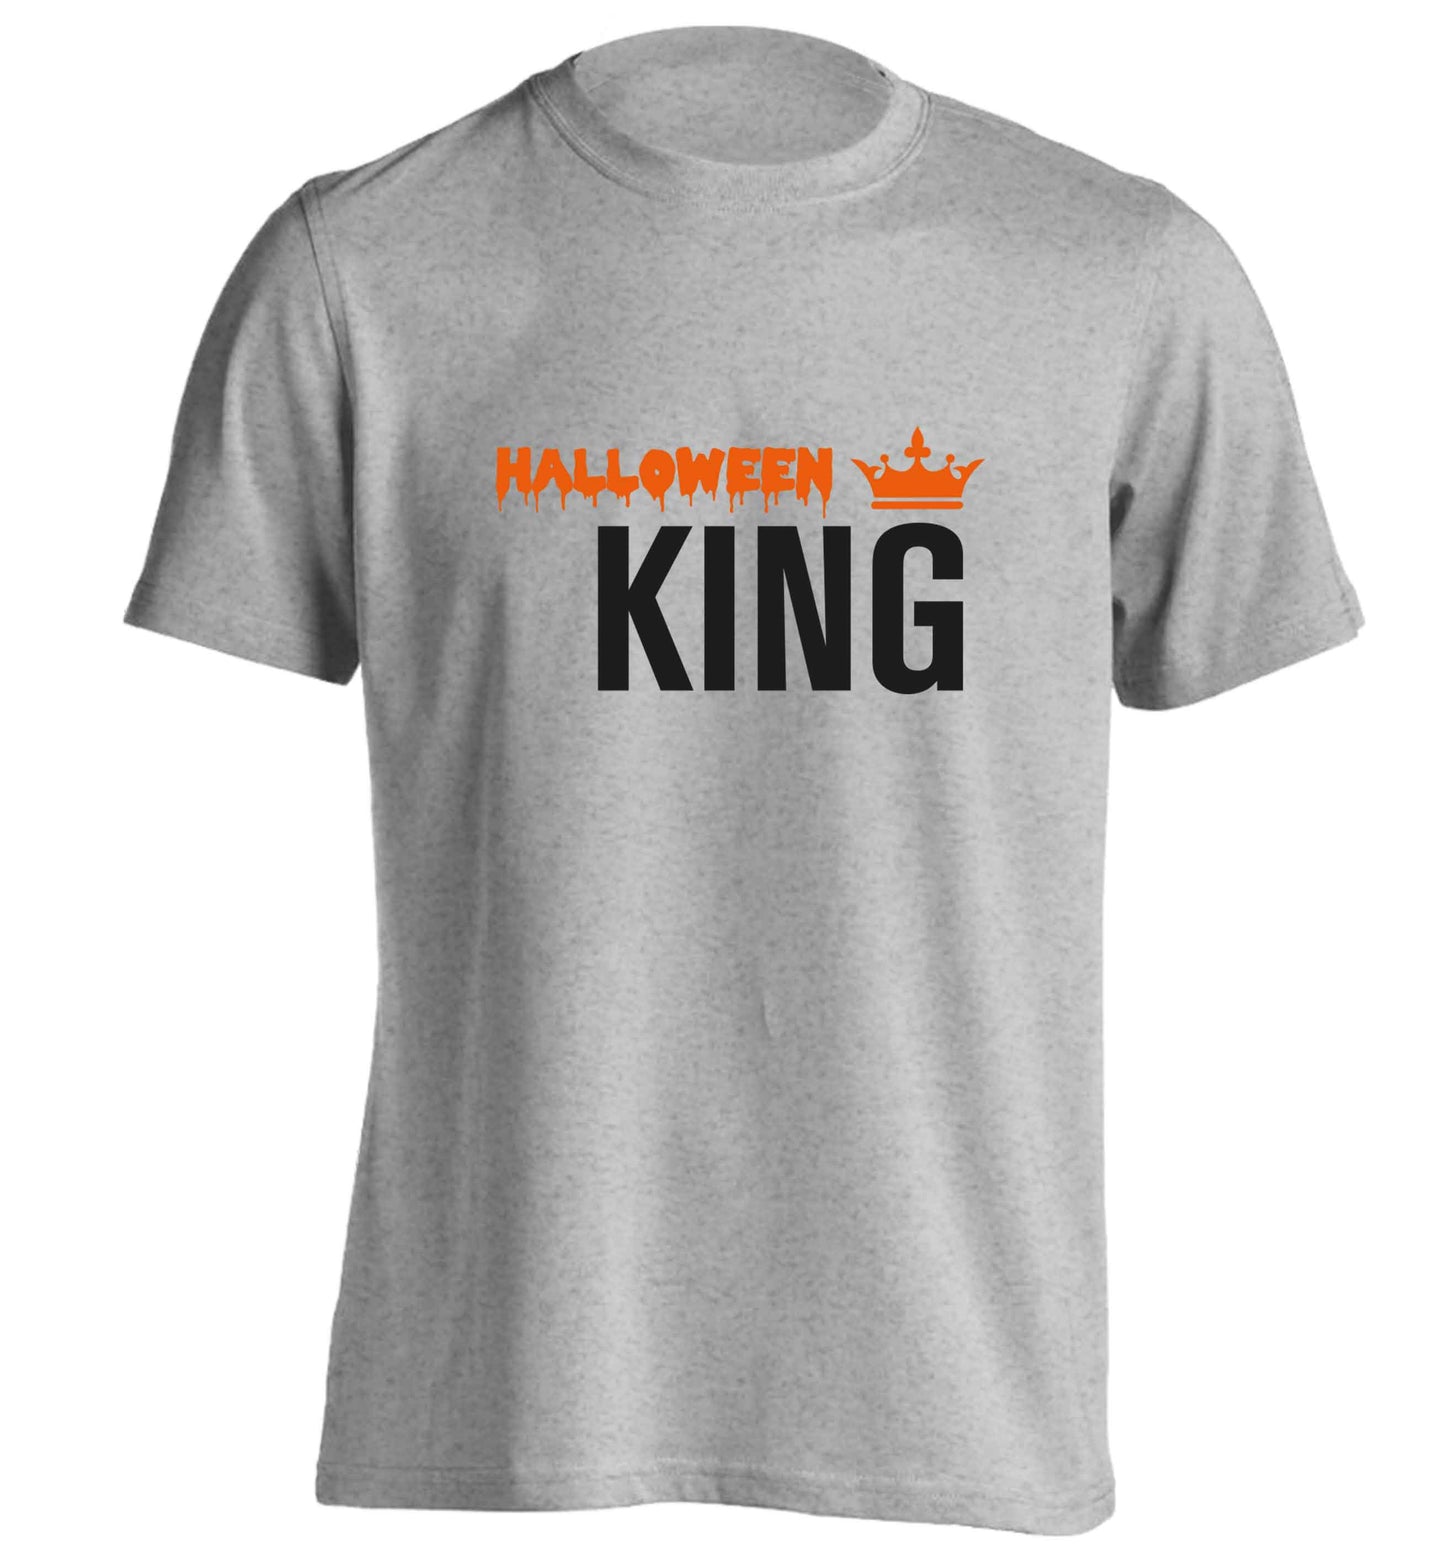 Halloween king adults unisex grey Tshirt 2XL